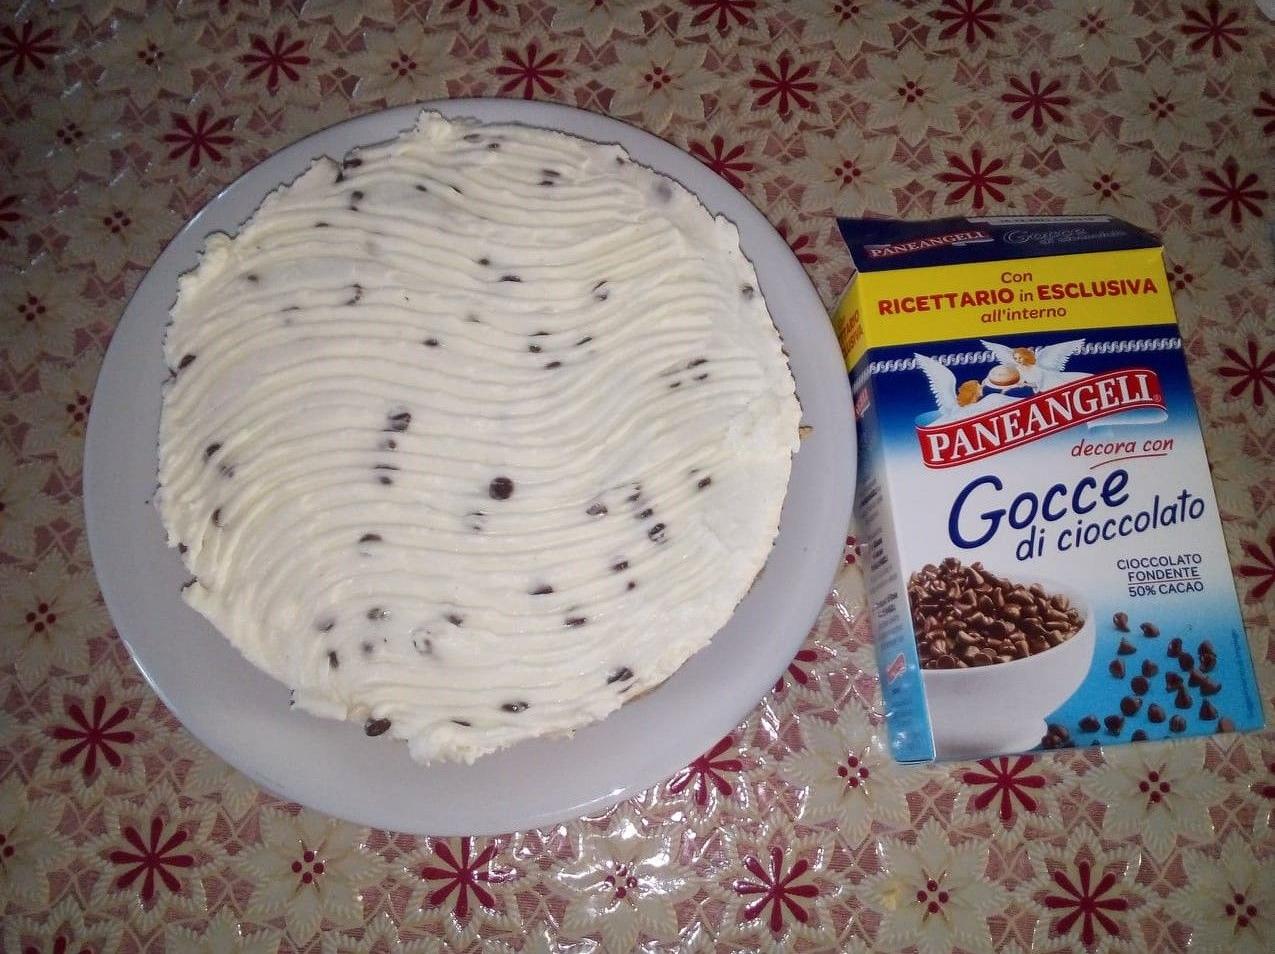 Cheesecake con gocce di cioccolato